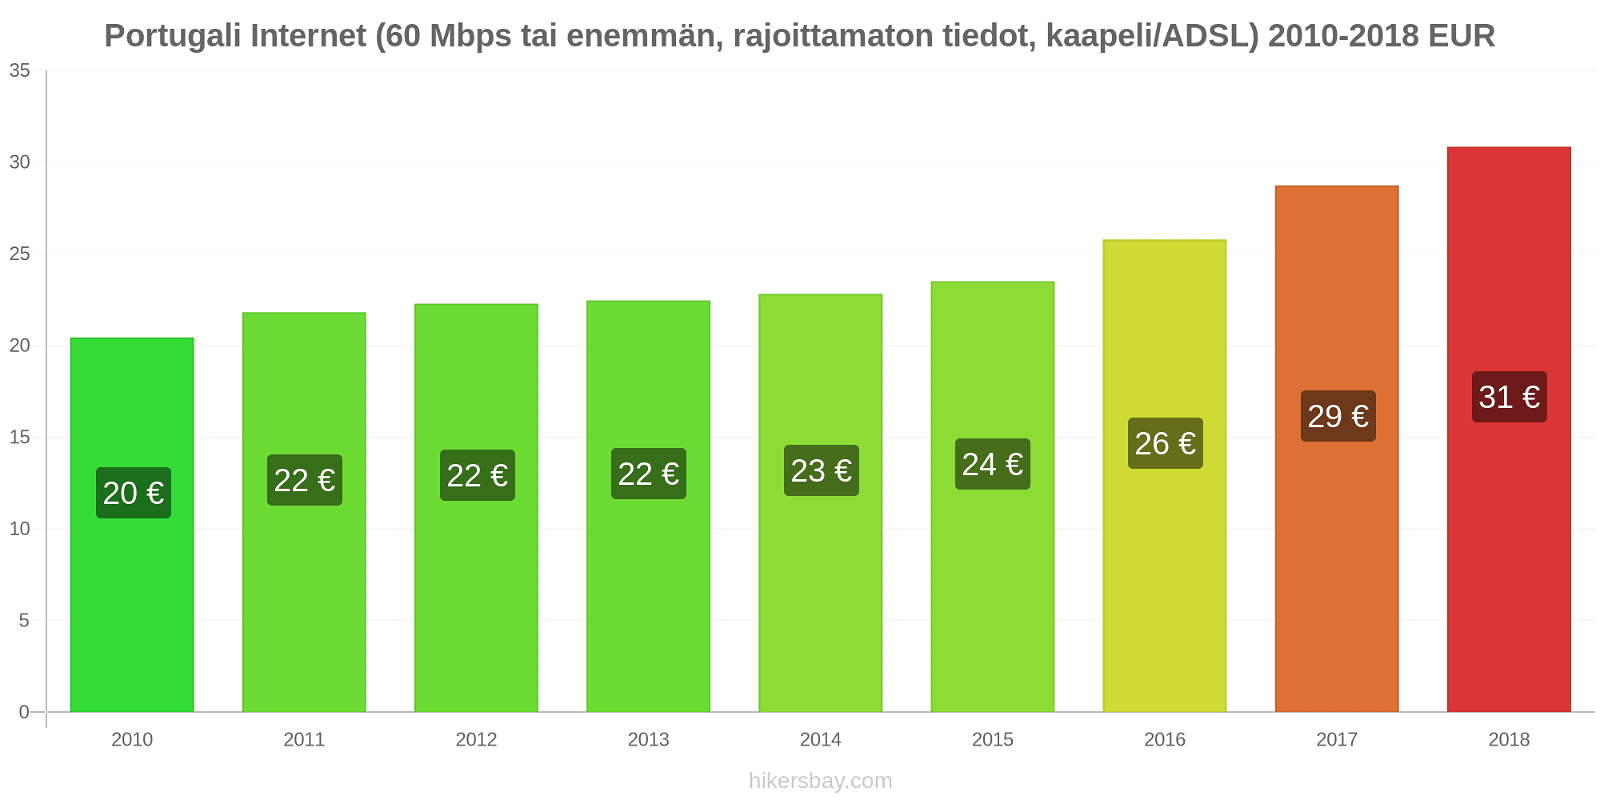 Portugali hintojen muutokset Internet (60 Mbps tai enemmän, rajoittamaton tiedot, kaapeli/ADSL) hikersbay.com